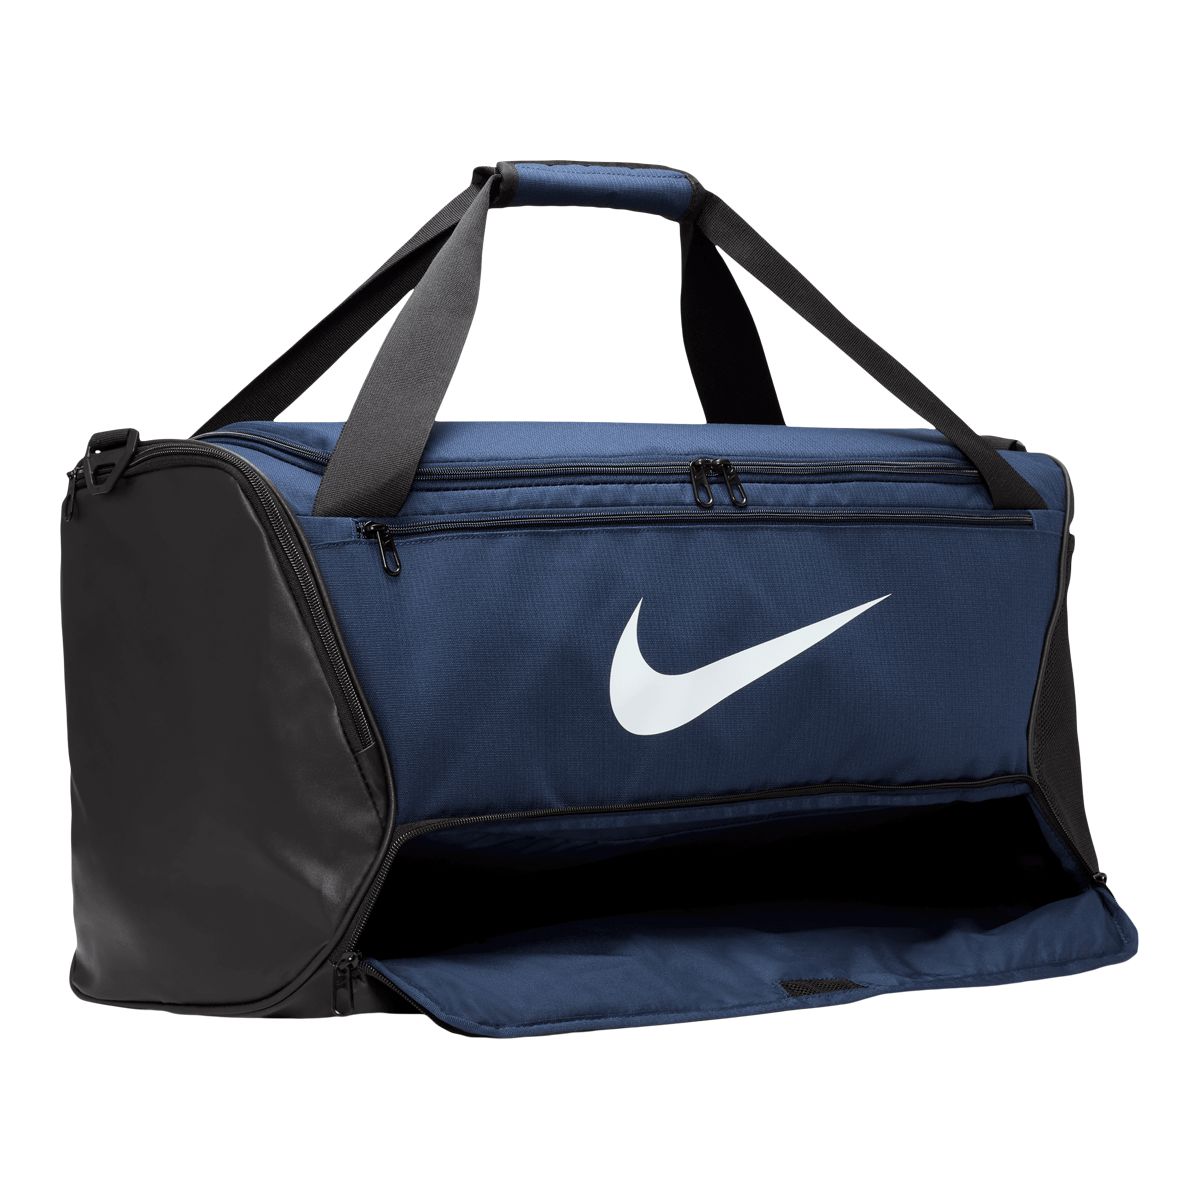 Best Gym Duffel Bag? Nike Brasilia Duffel Bag Review and